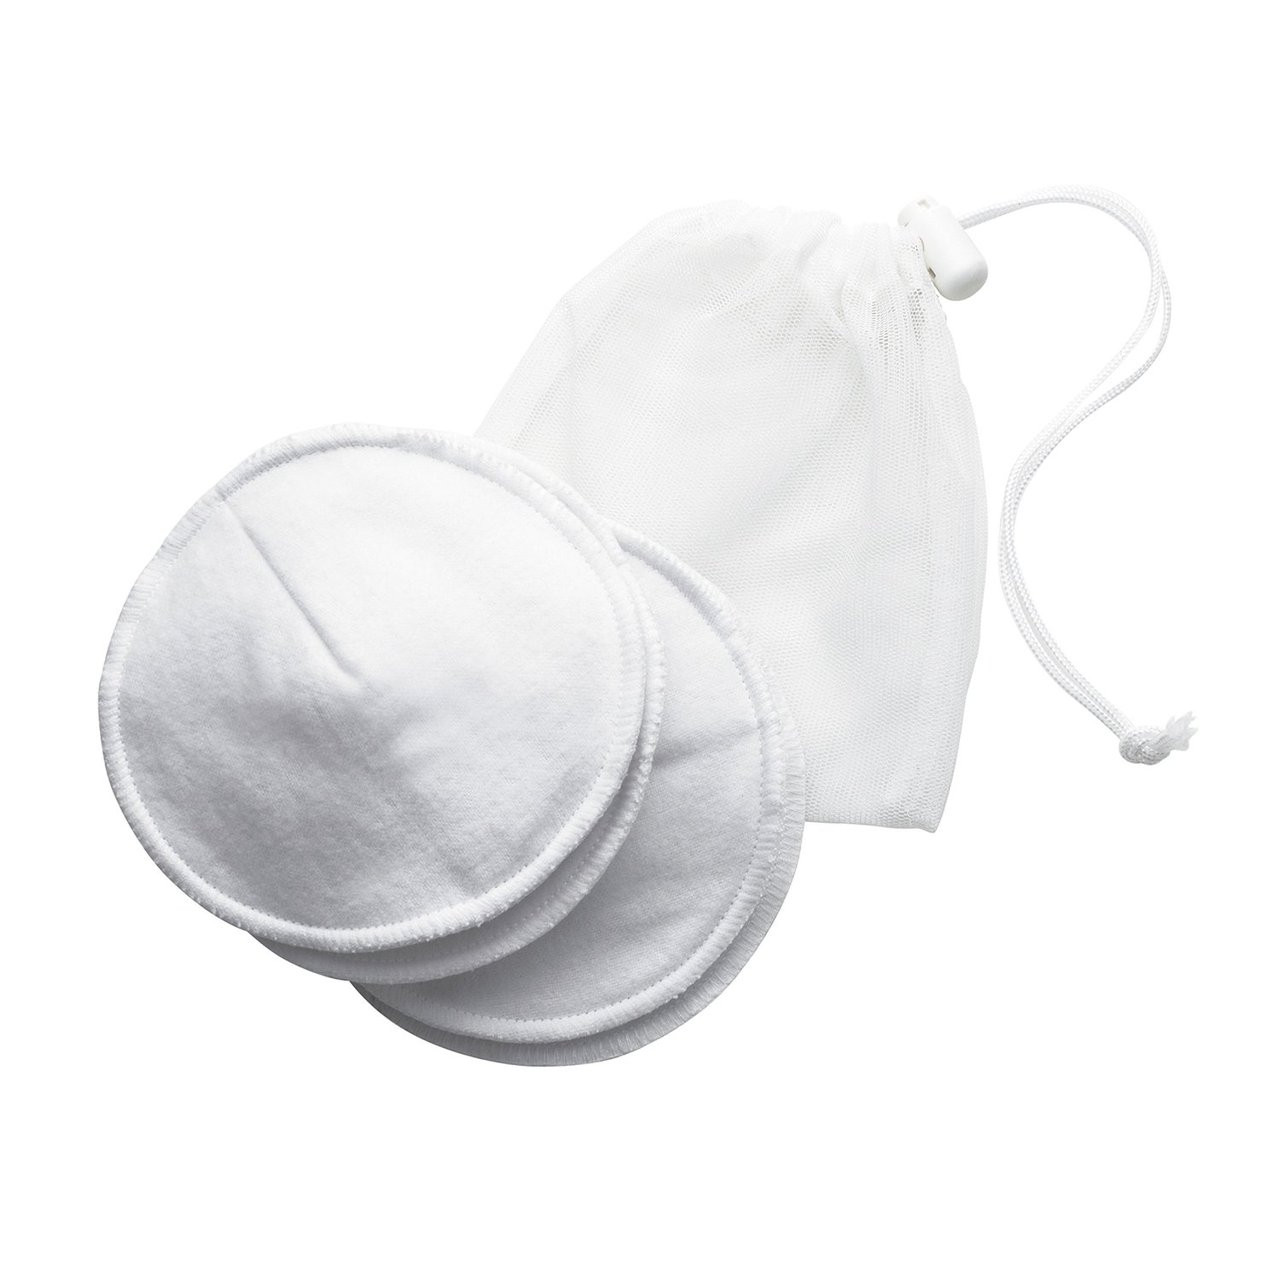 Medela 100% Cotton Washable Nursing Bra Pads - For Moms